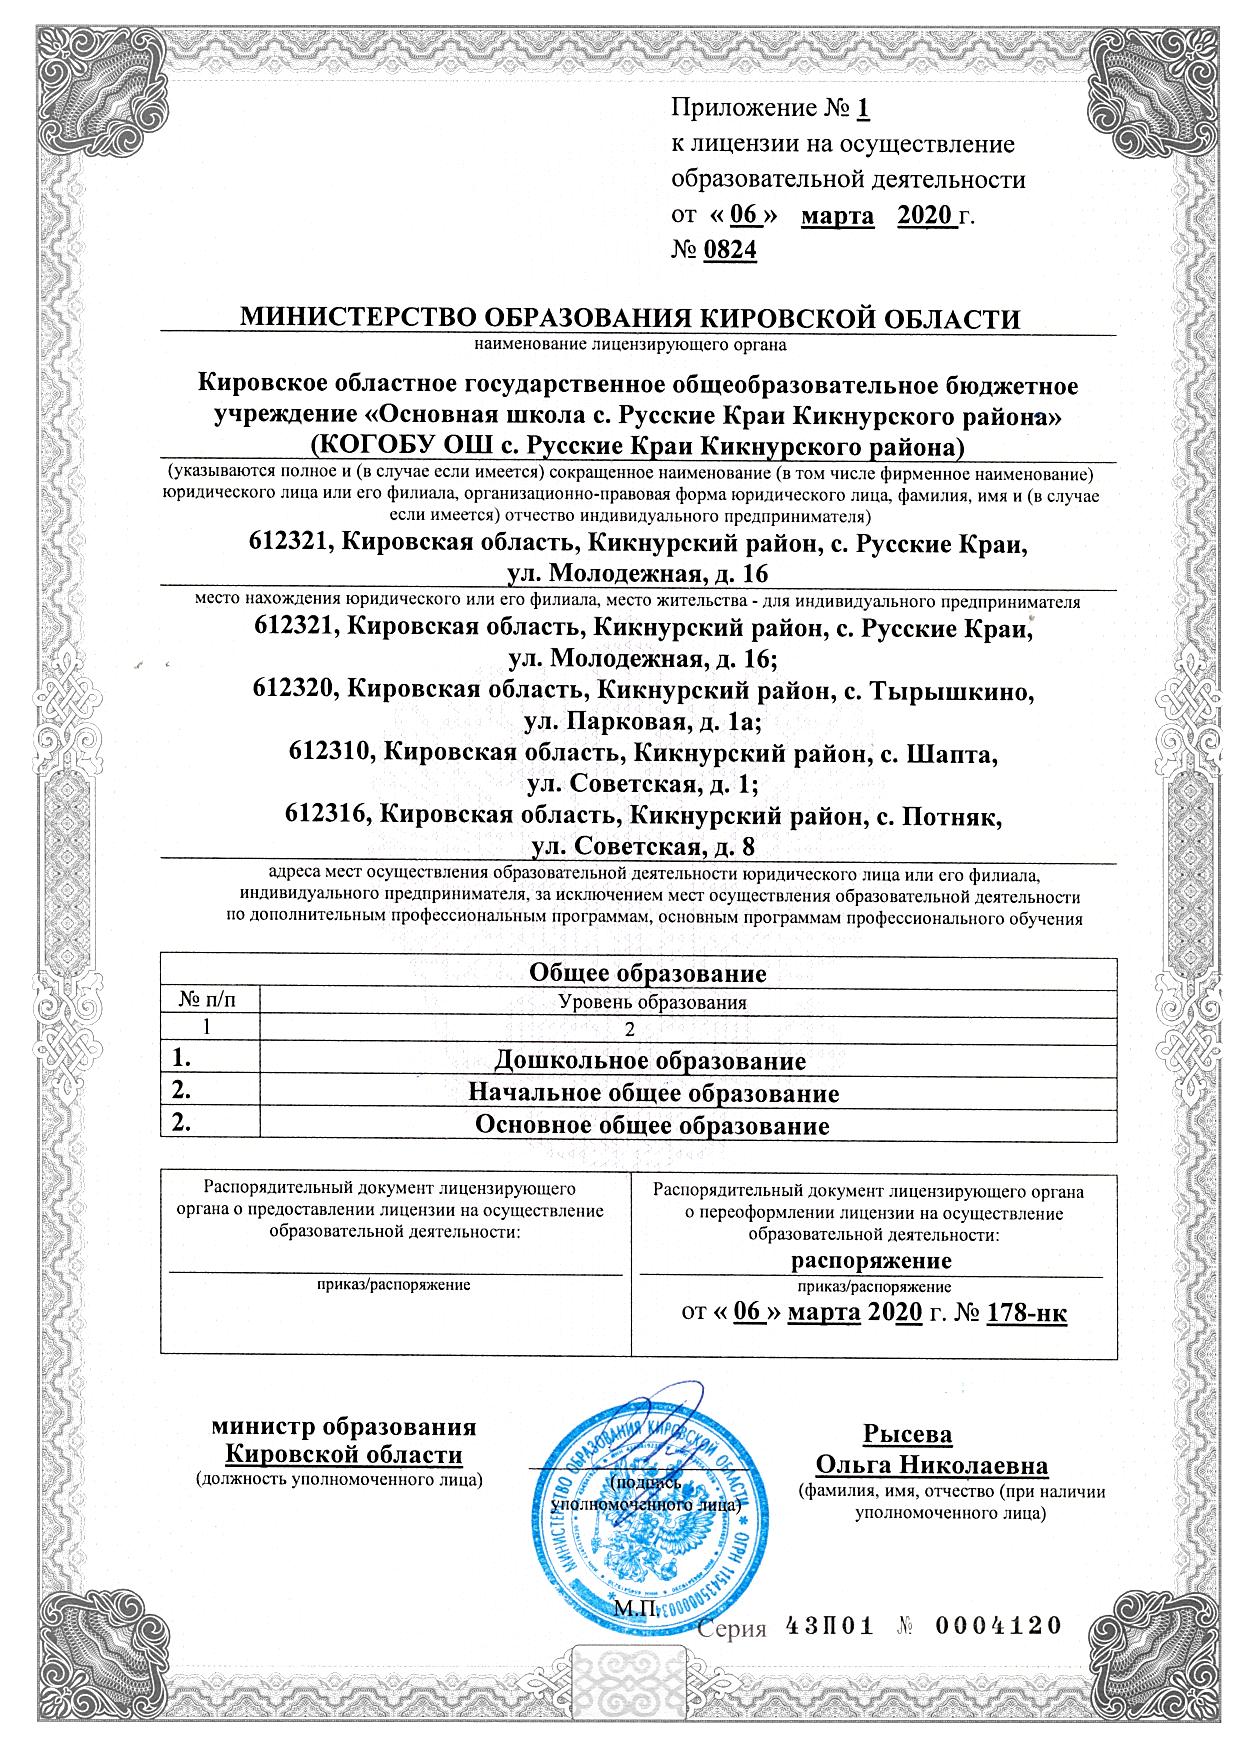 Приложение к лицензии КОГОБУ ОШ с Русские Краи.jpg